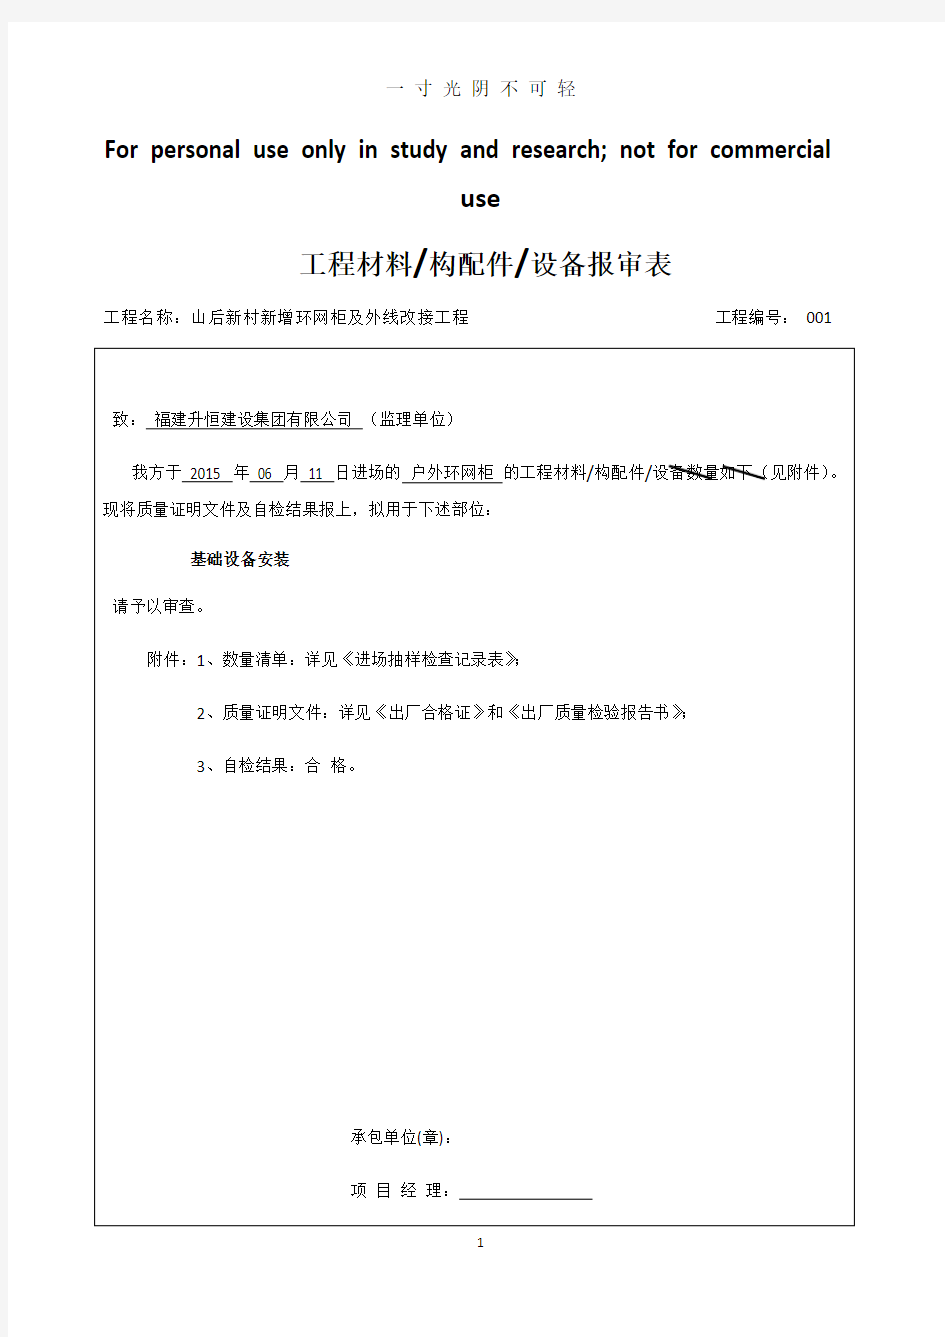 工程材料材料进场报审表.pdf